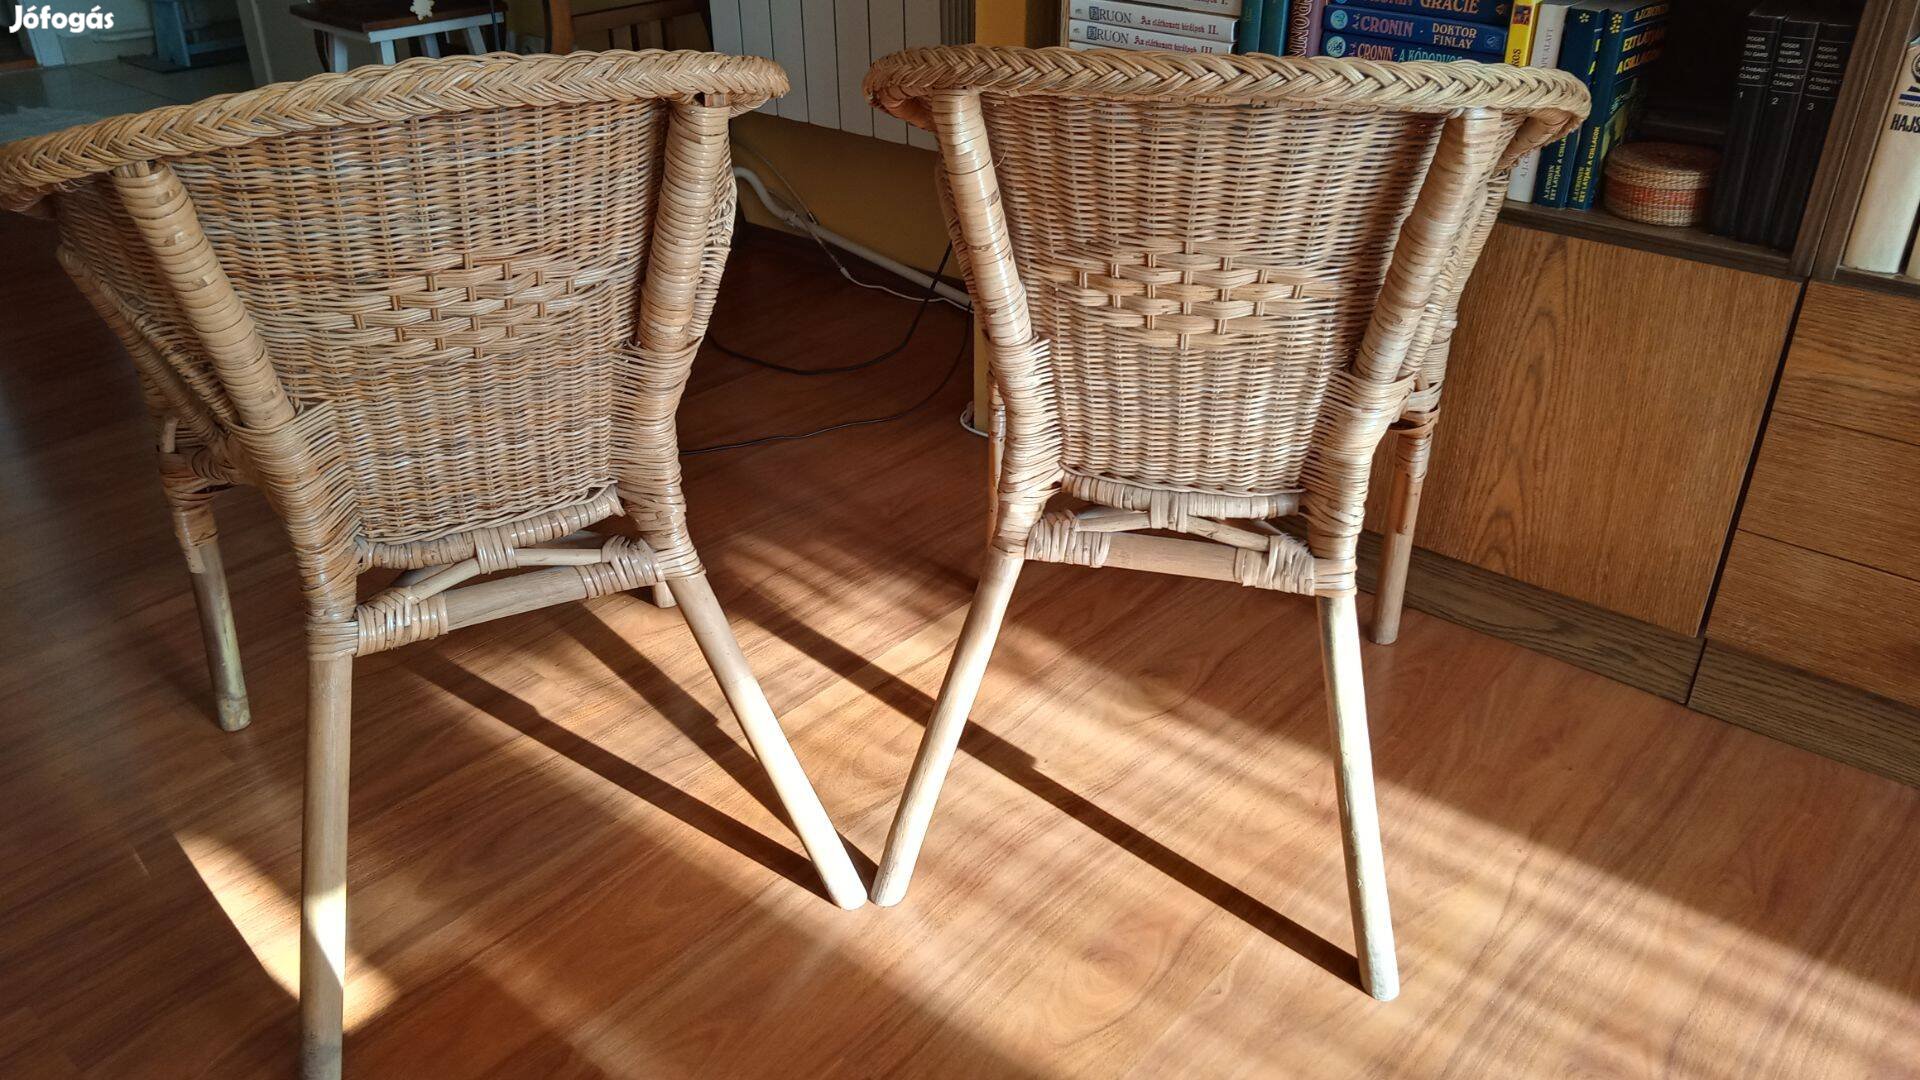 Eladó 2 db rattan/bambusz szék